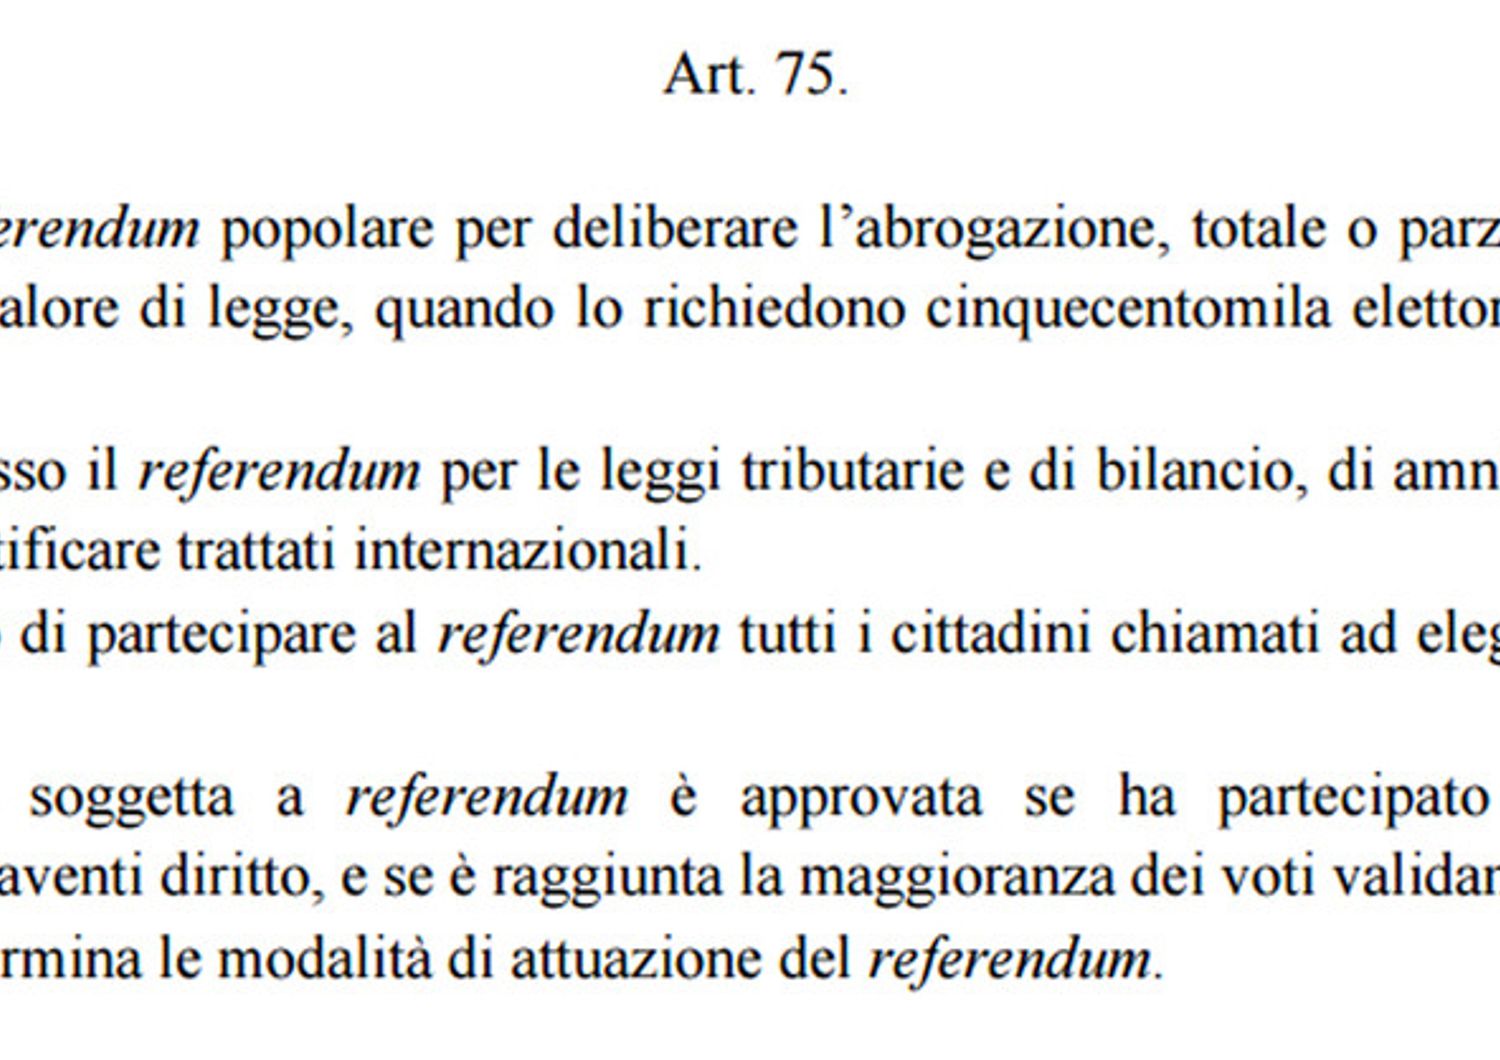 Art. 75 della Costituzionale italiana